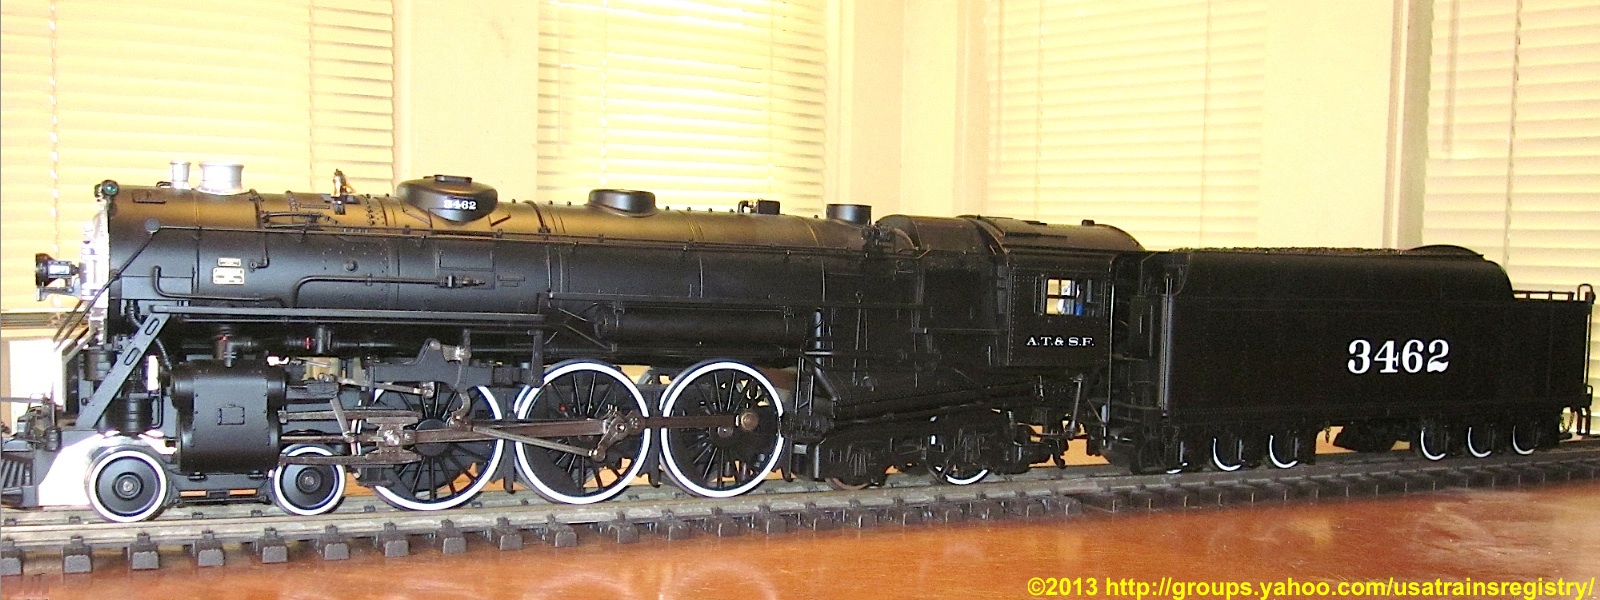 Santa Fe Dampflok (Steam locomotive) J1e Hudson 3462